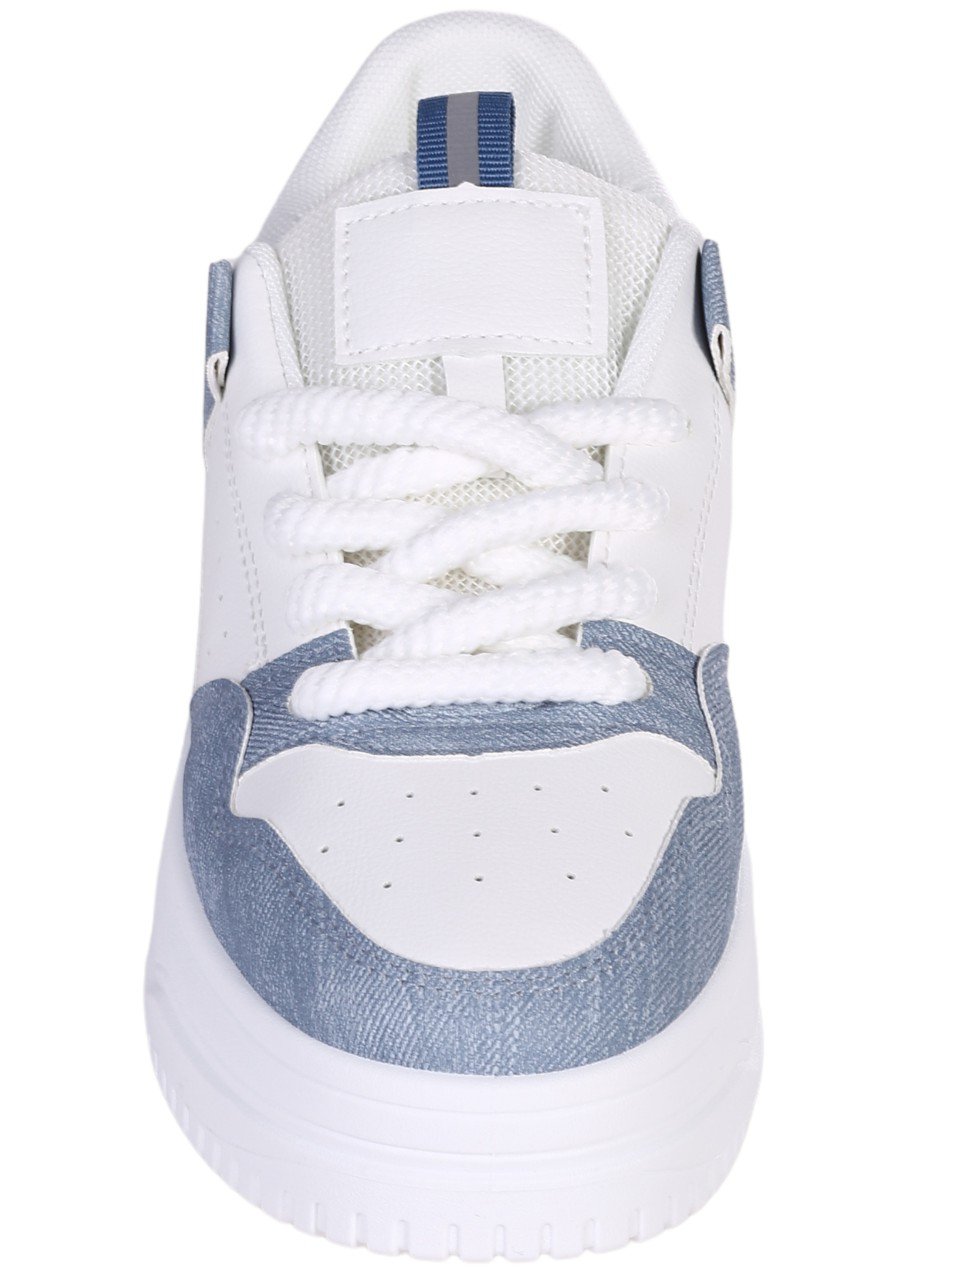 Ежедневни дамски обувки в бял/син цвят 3U-24006 white/blue 